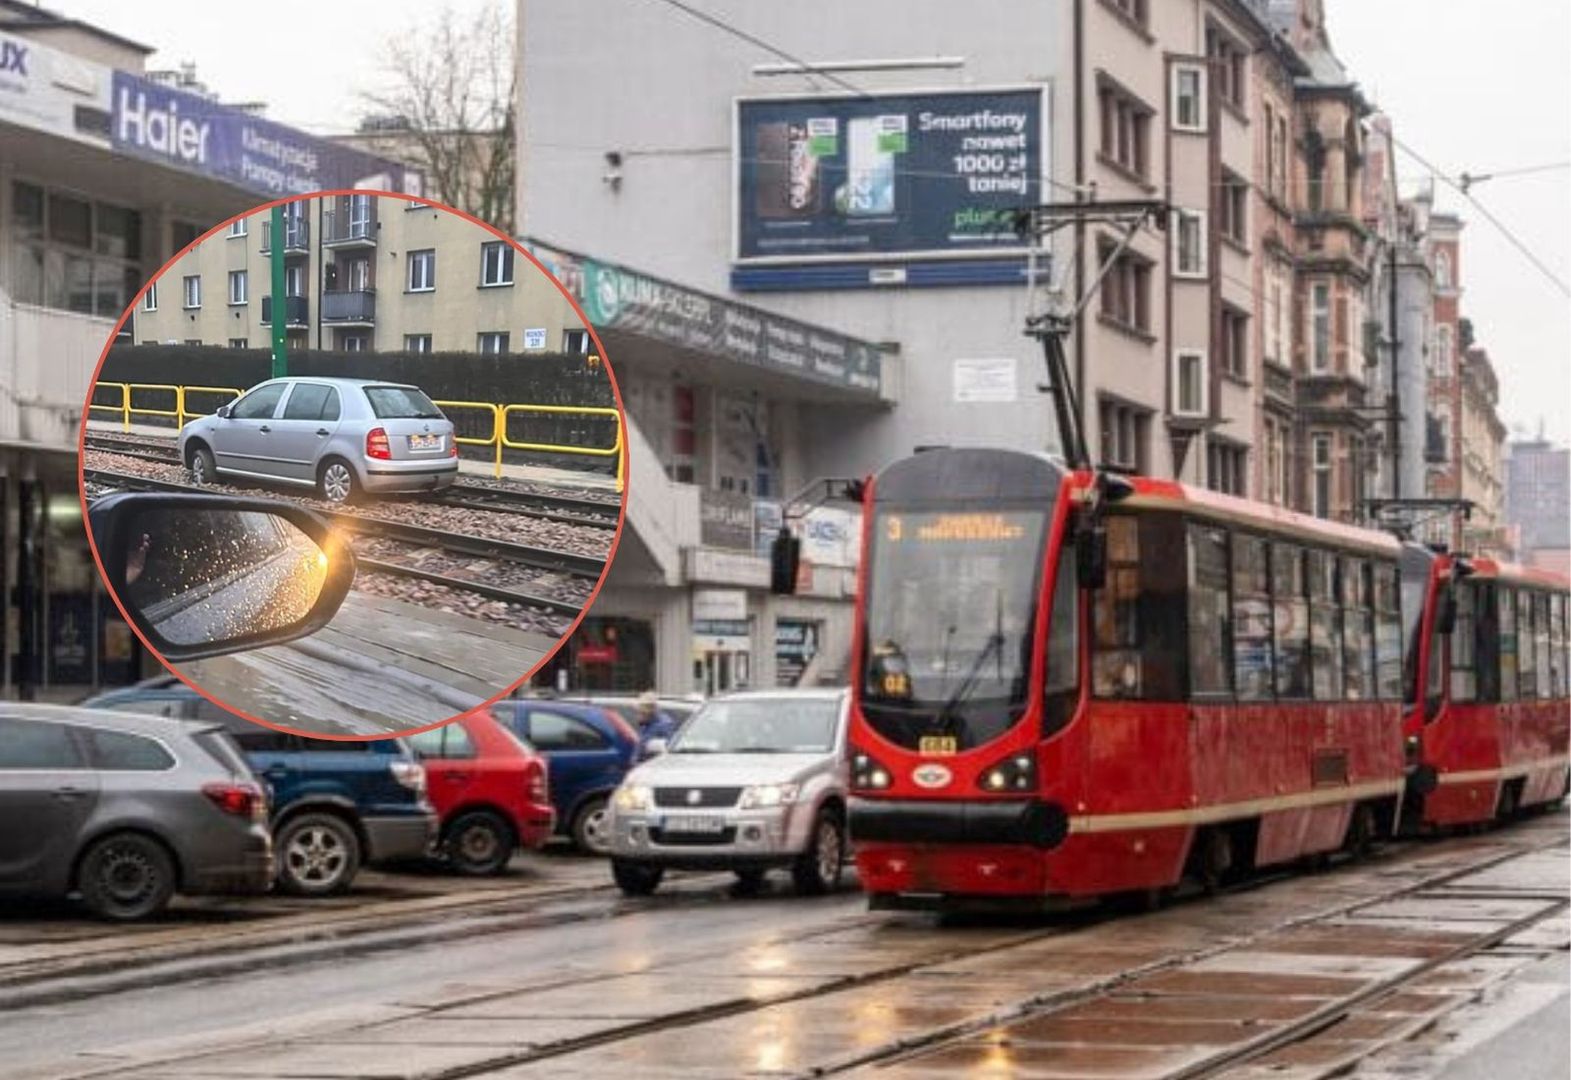 Skoda "zaparkowana" na torach tramwajowych w Zabrzu. Burza w sieci